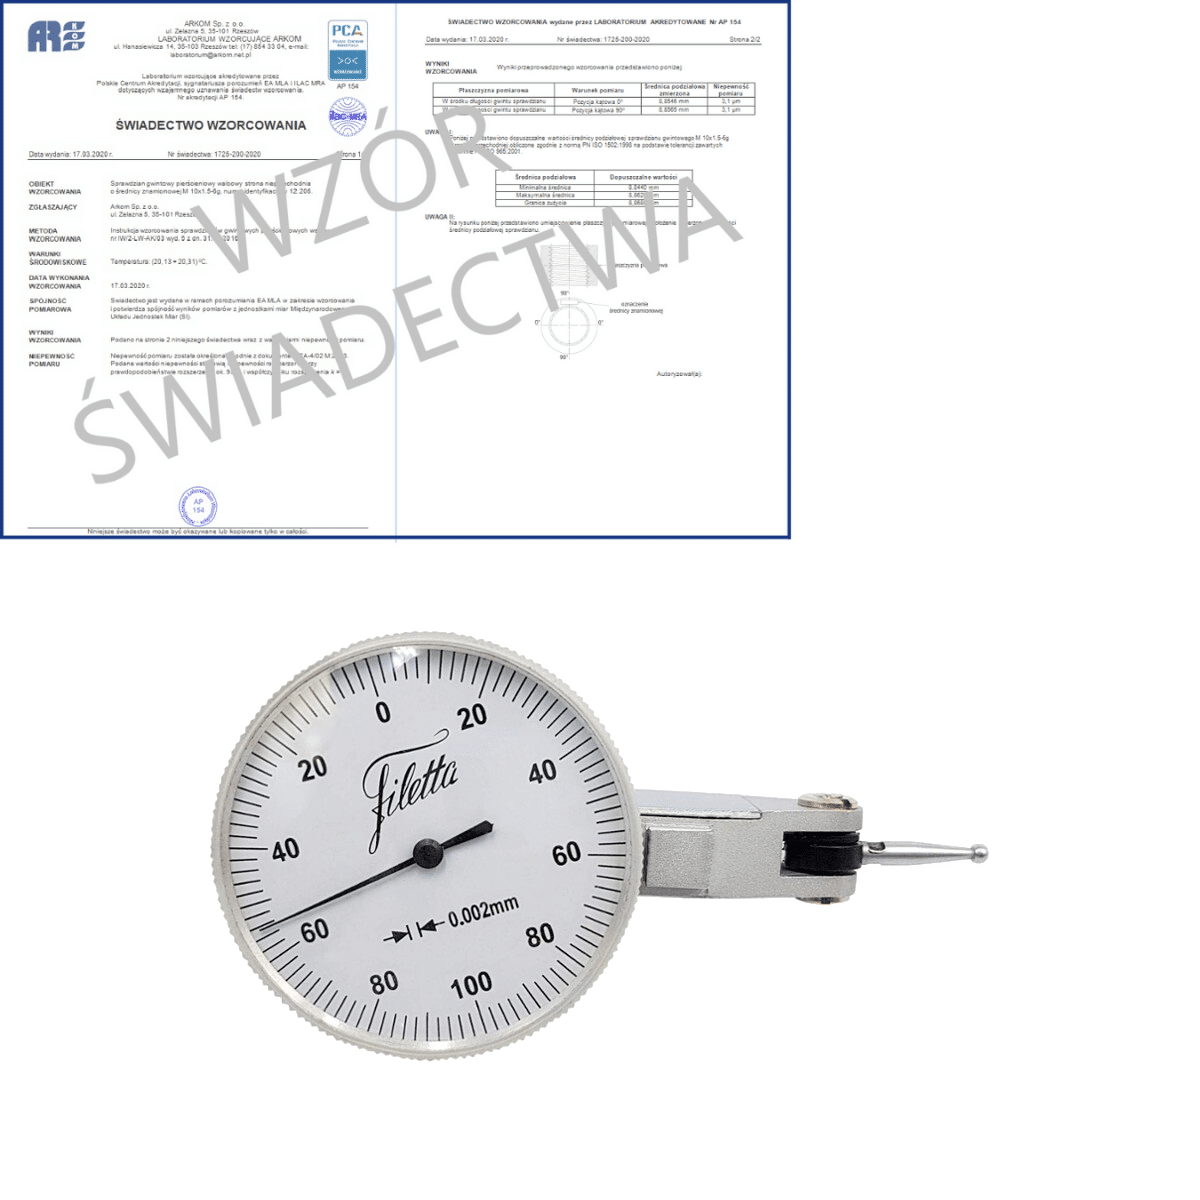 SCHUT czujnik dźwigniowo-zębaty 0-100-0/0.2/0.002mm diatest + świadectwo wzorcowania PCA 907.942 WZORC